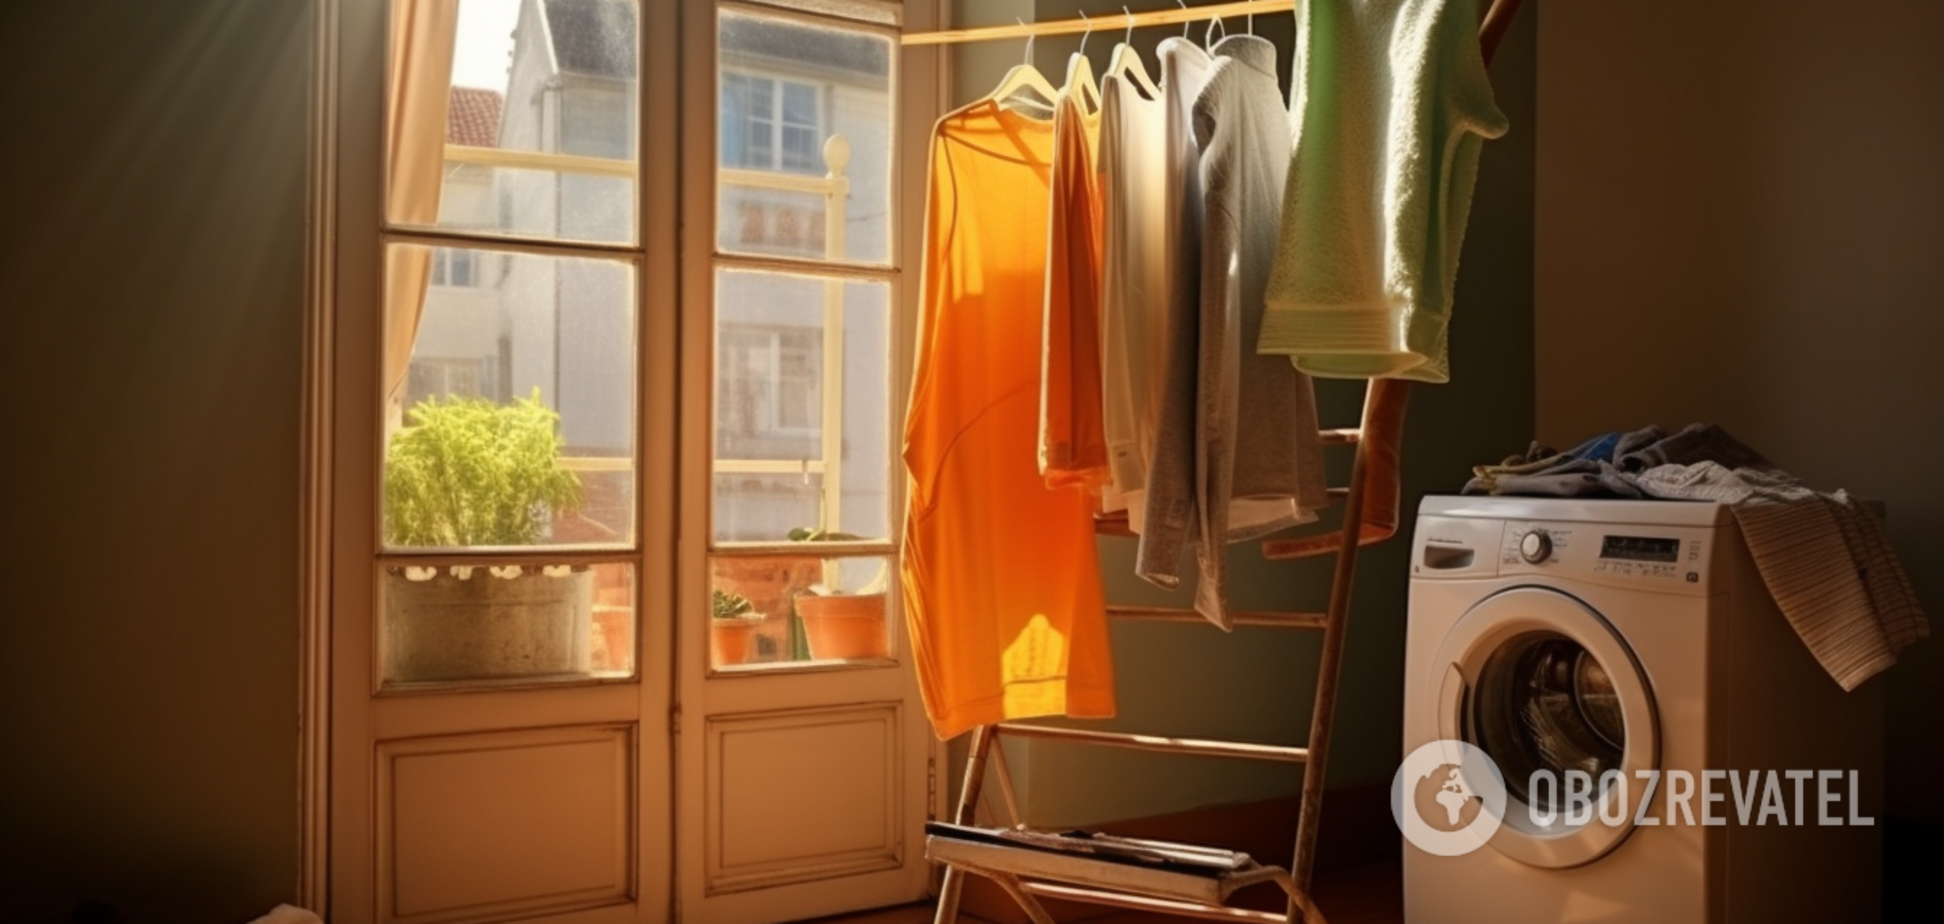 Как высушить одежду в квартире без сушилки, чтобы она не пахла сыростью: эффективный метод